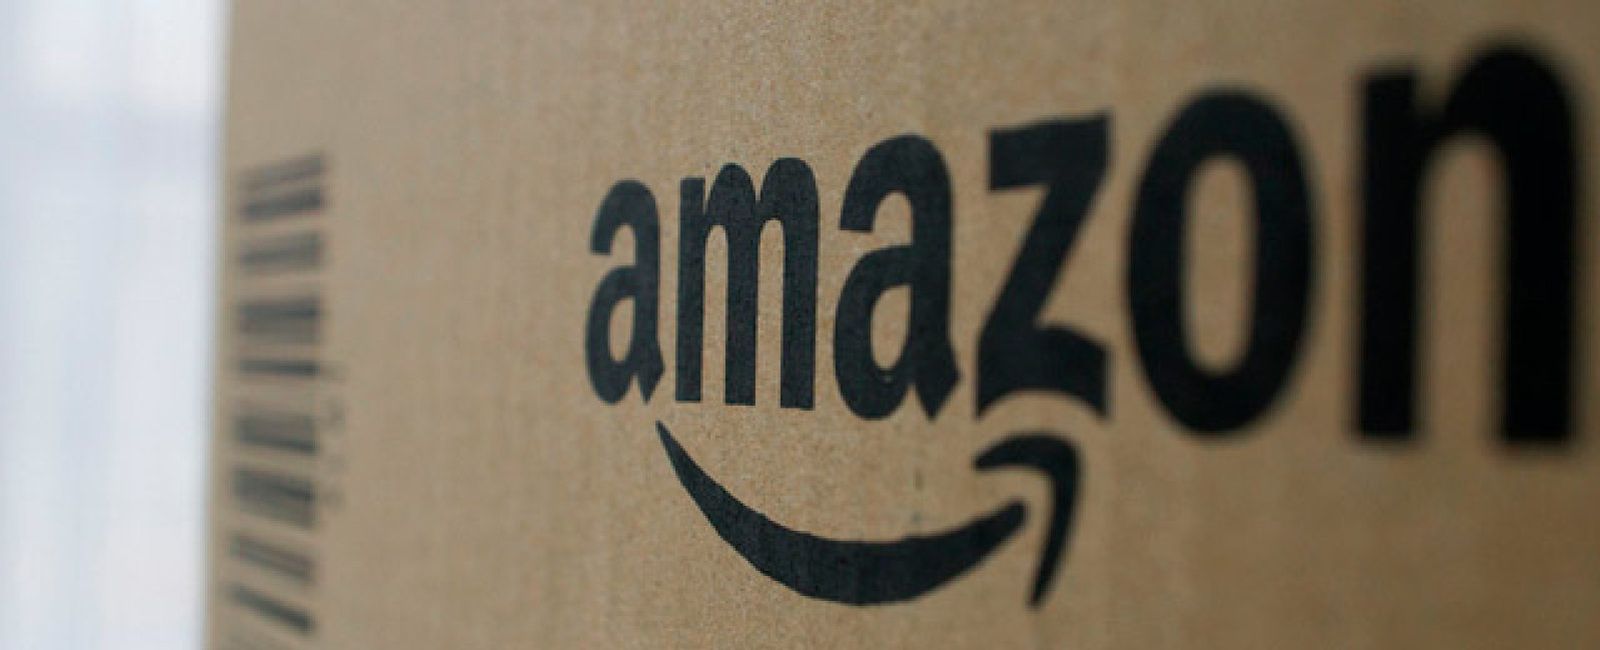 Foto: Google y Amazon: colisión inminente